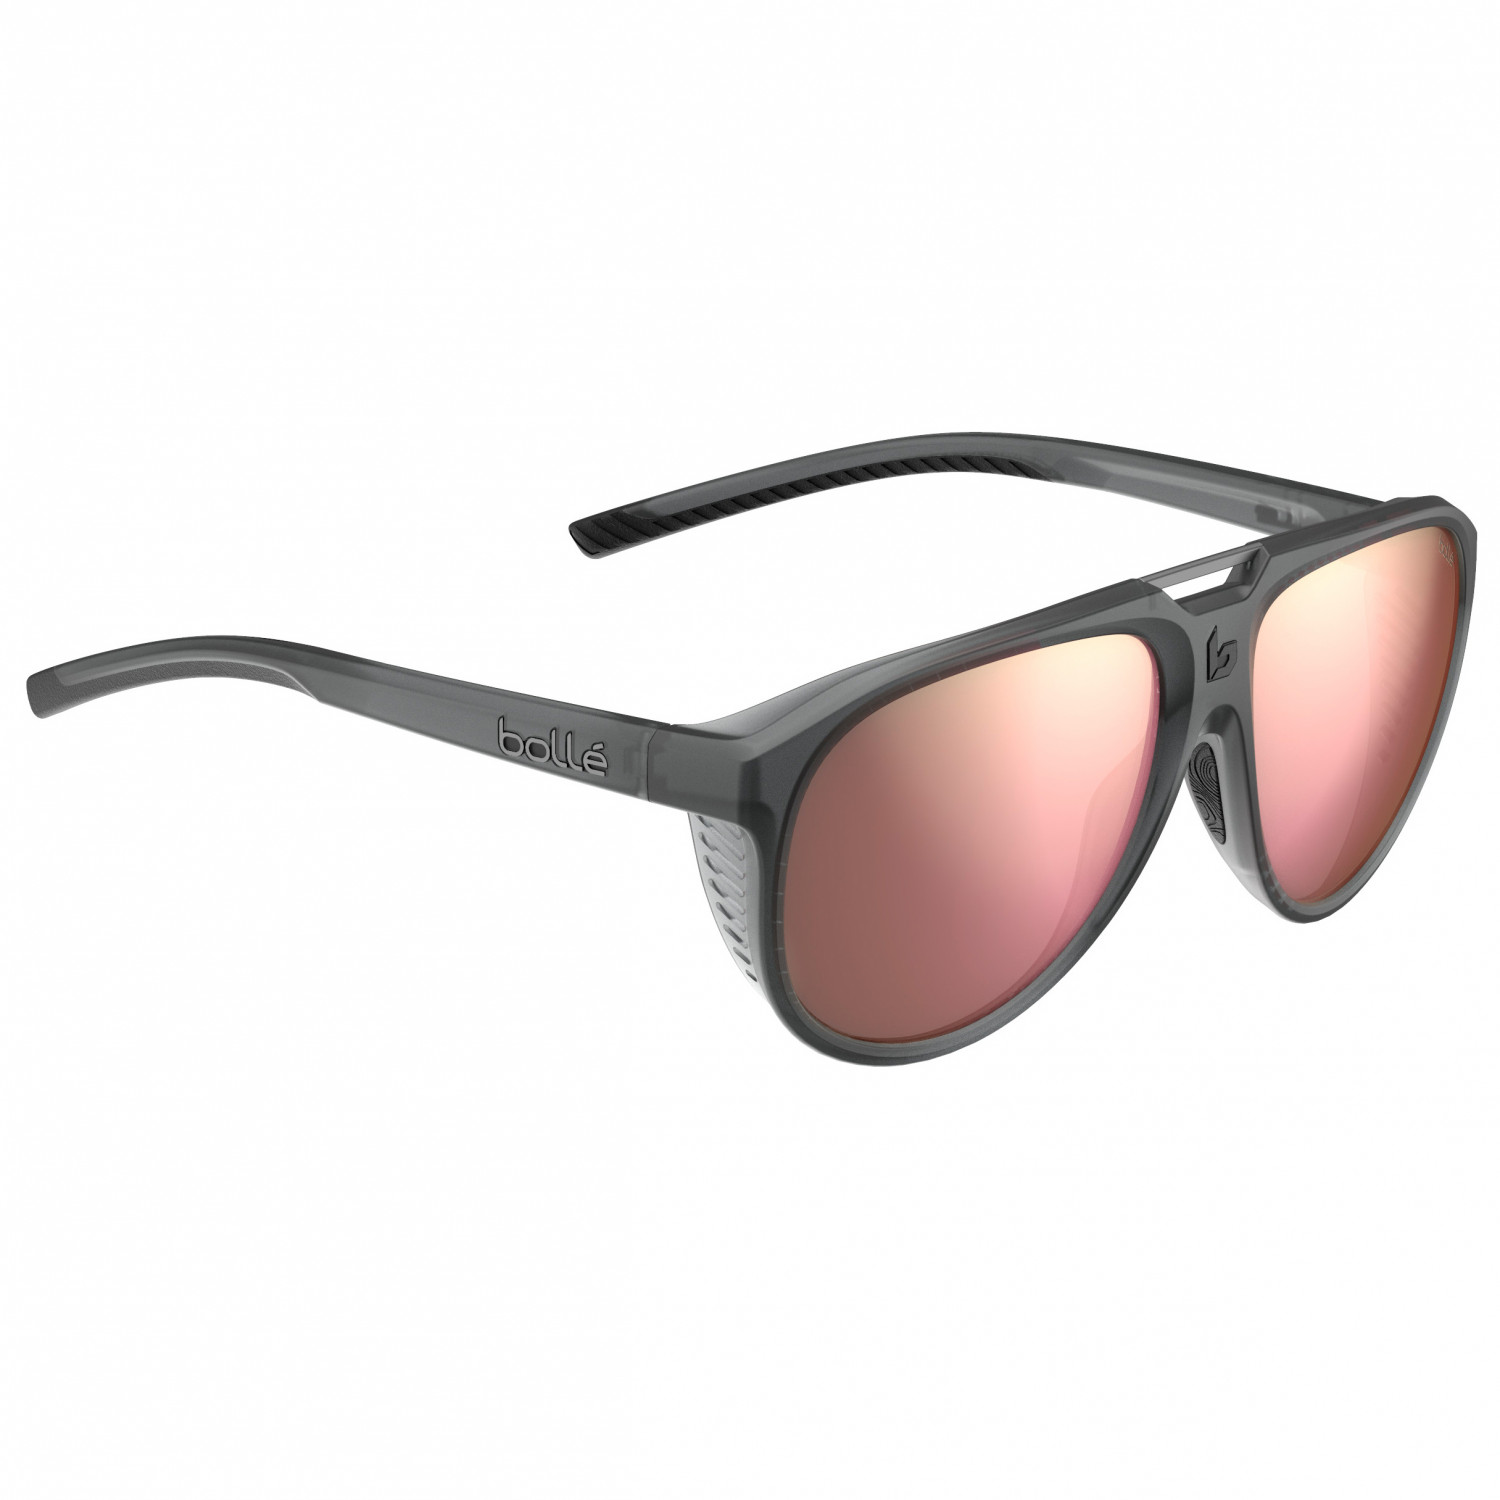 Солнцезащитные очки Bollé Euphoria Polarized S3 (VLT 15%), цвет Black Frost